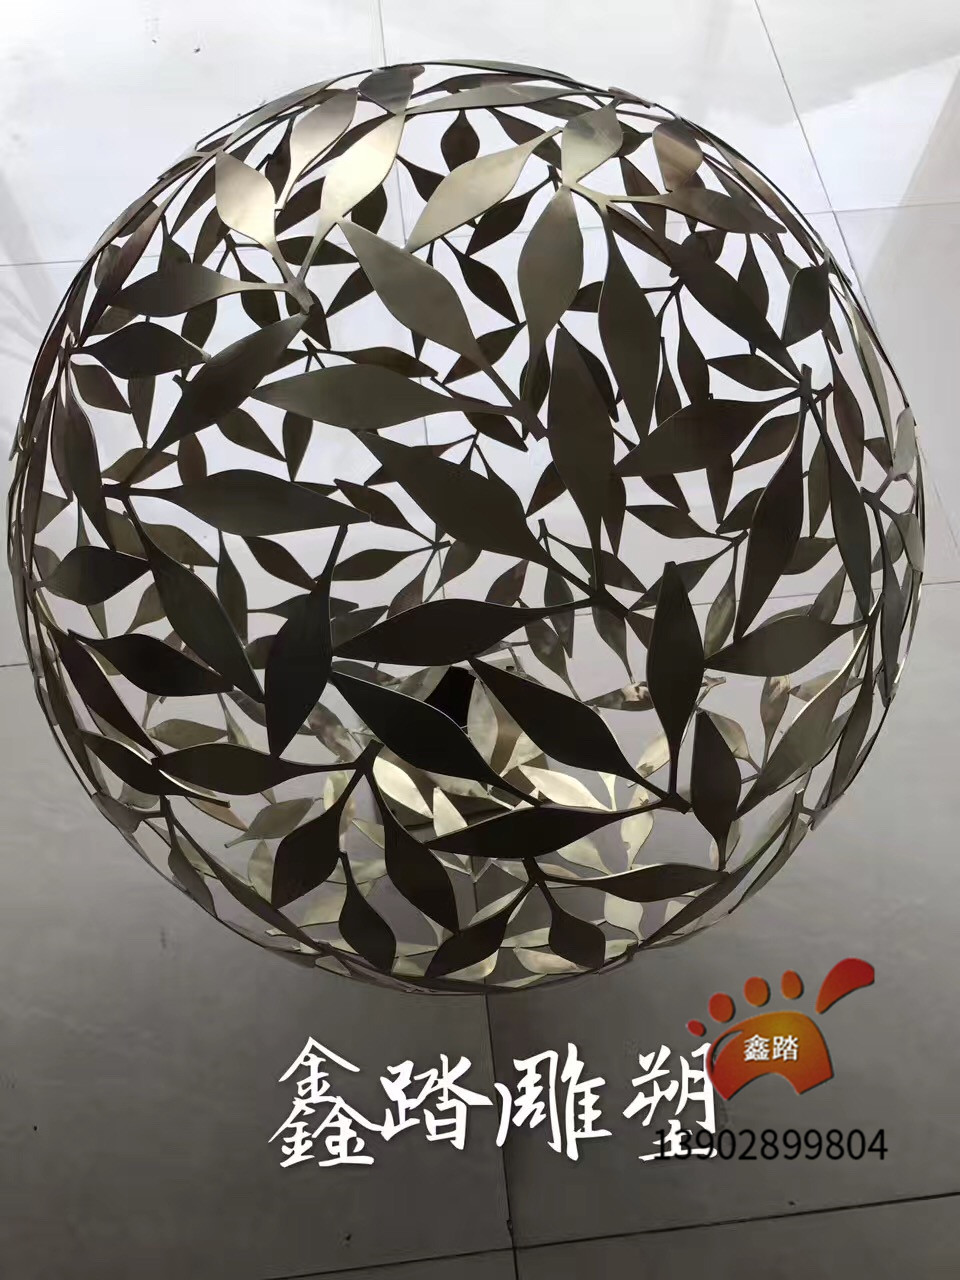 空心圆球不锈钢雕塑树叶形状金色表面 广州佛山厂家专业制作